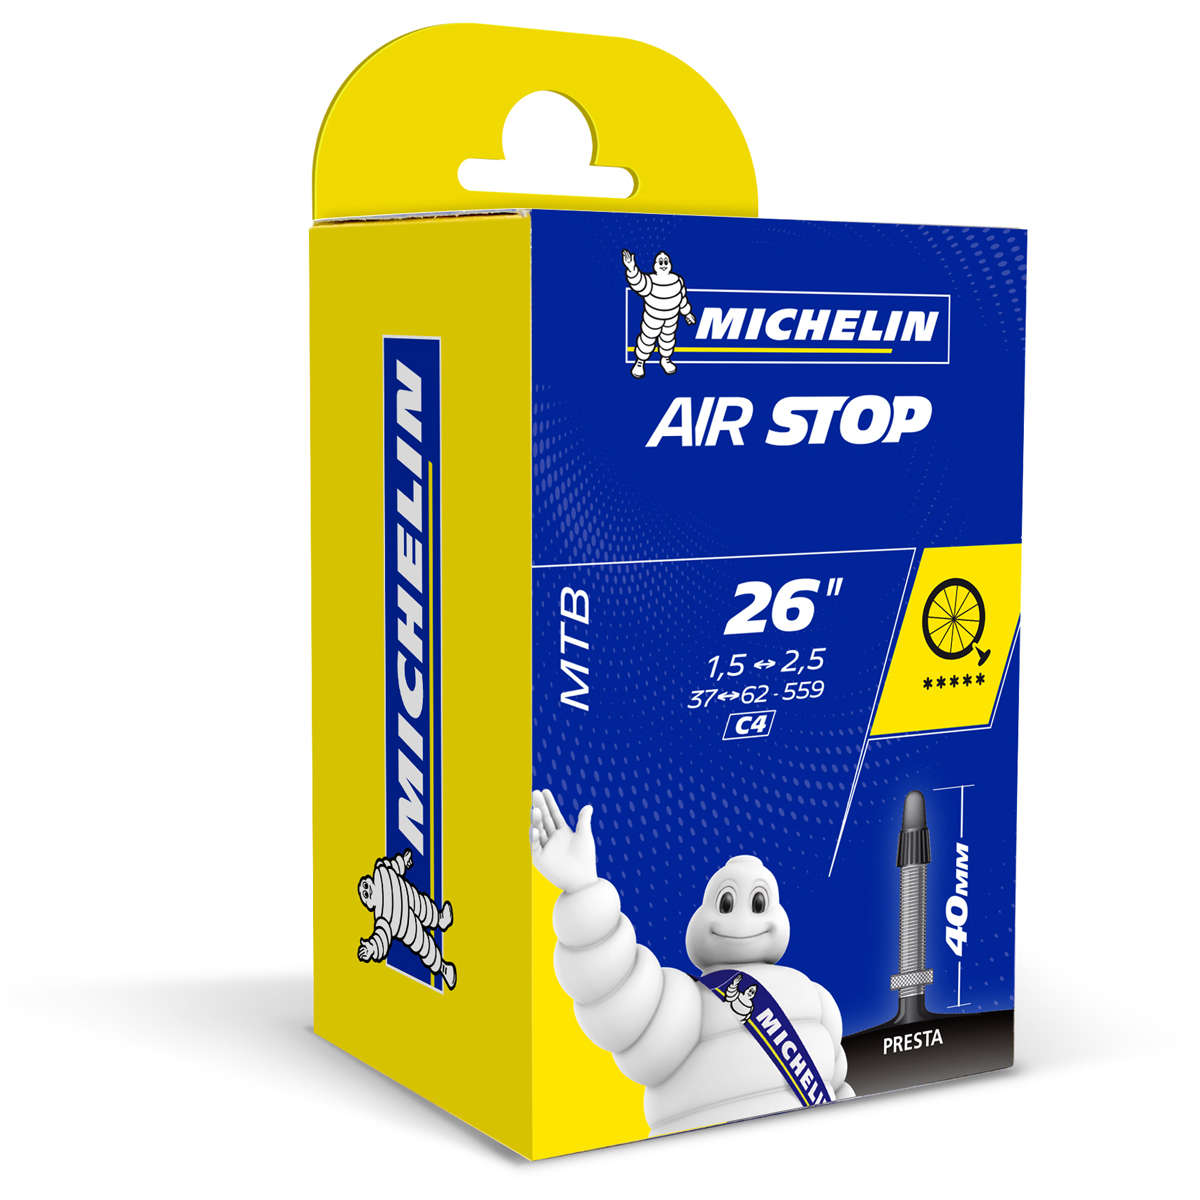 Michelin Airstop C4 Binnenband Presta Ventiel 26x140-210